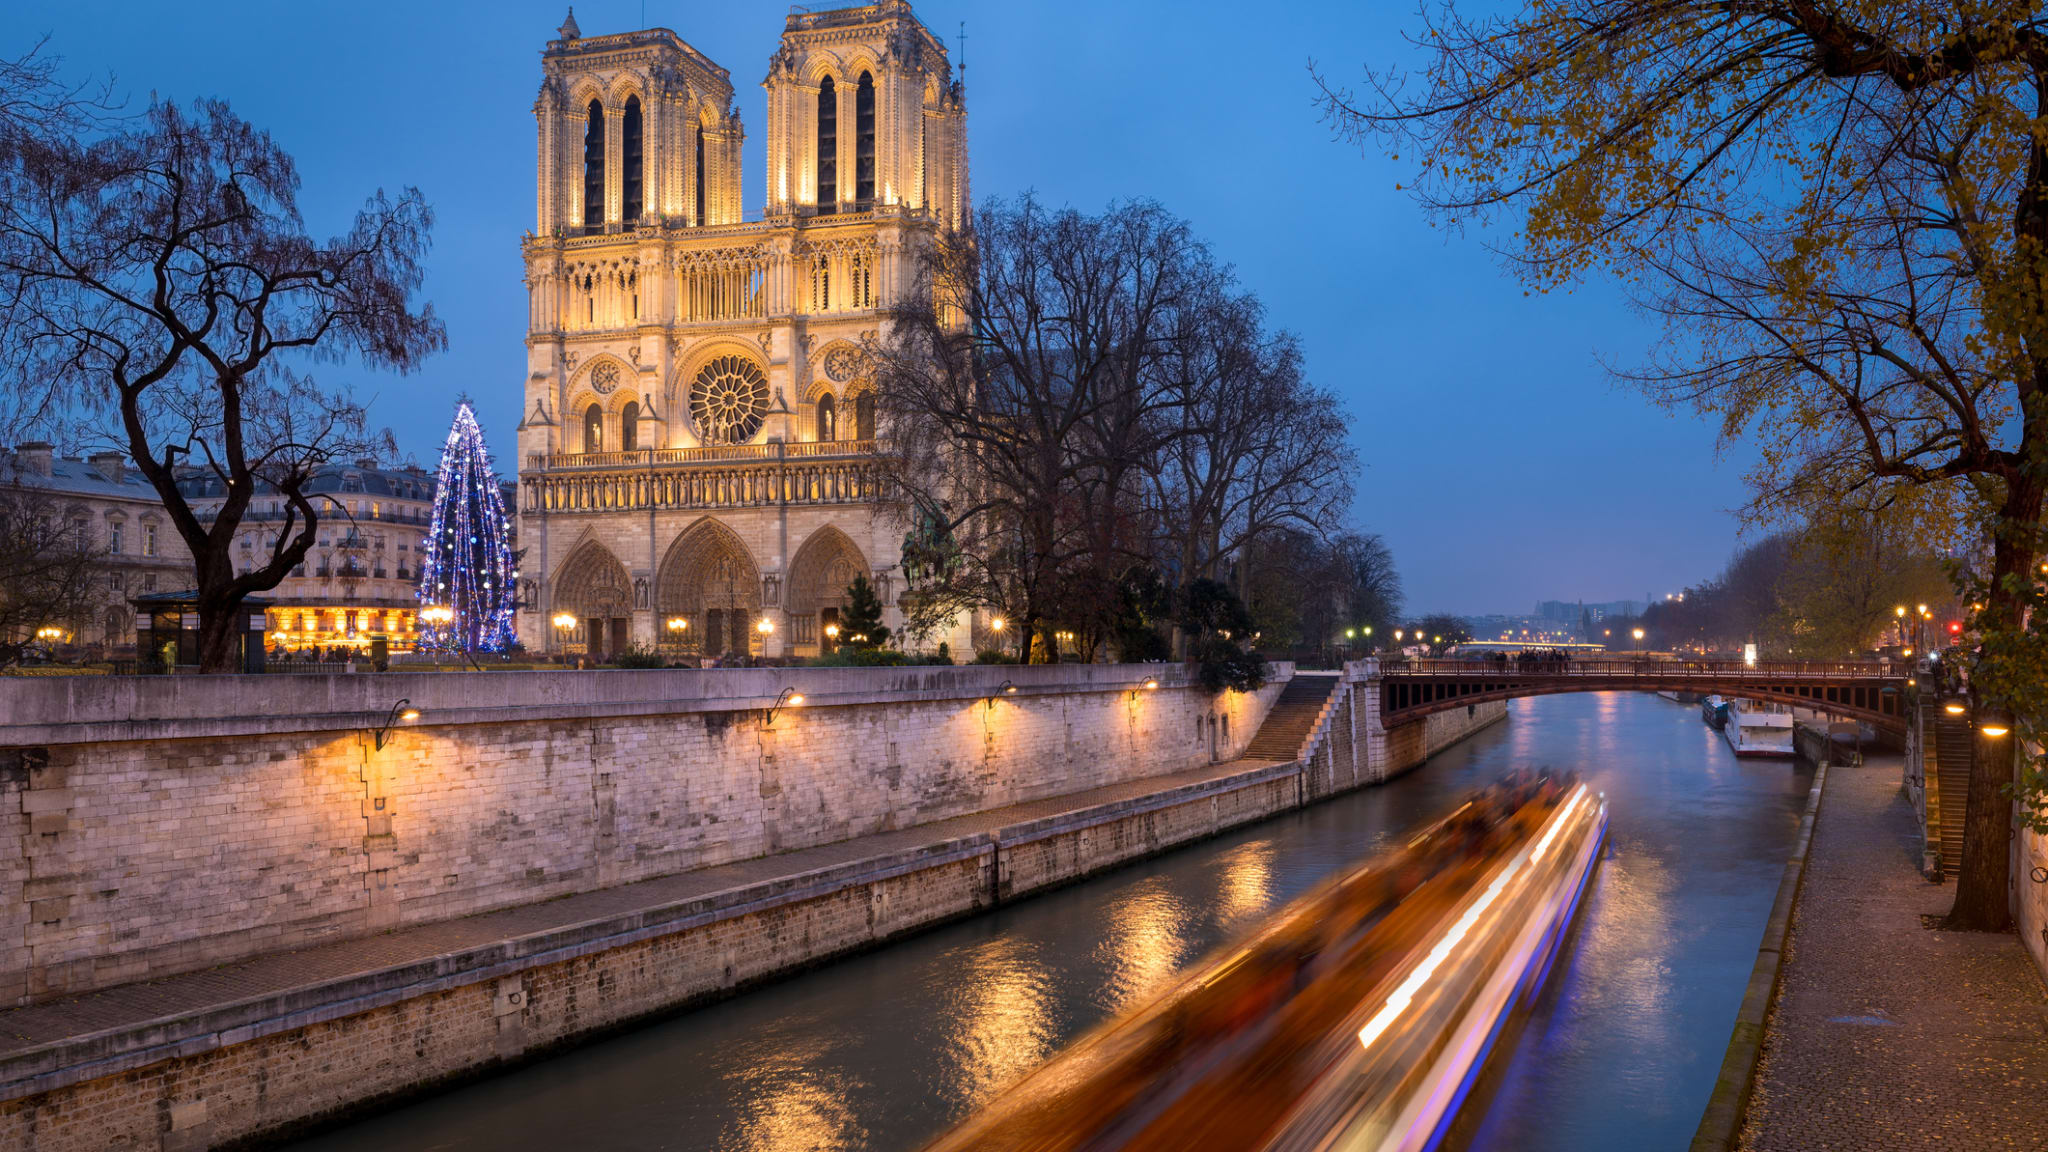 Notre Dame, Paris © francois-roux/iStock / Getty Images Plus via Getty Images